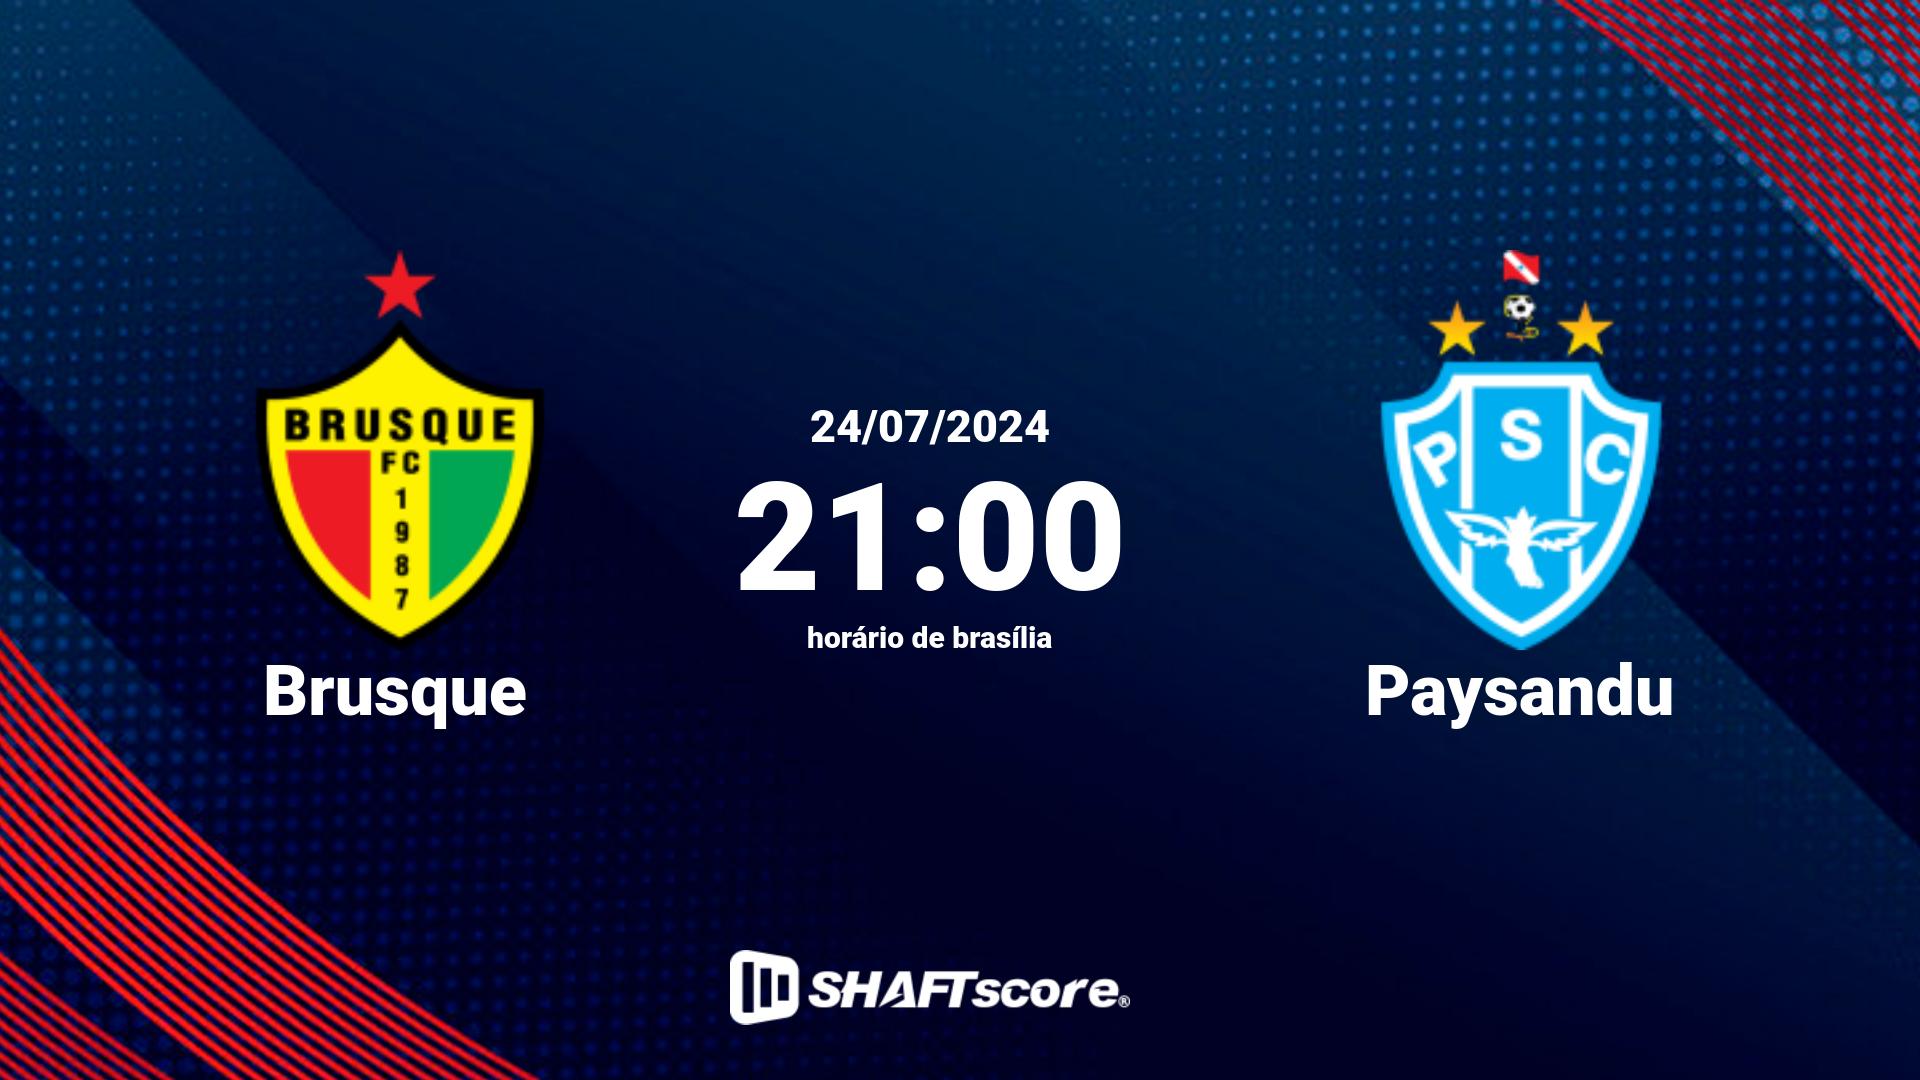 Estatísticas do jogo Brusque vs Paysandu 24.07 21:00